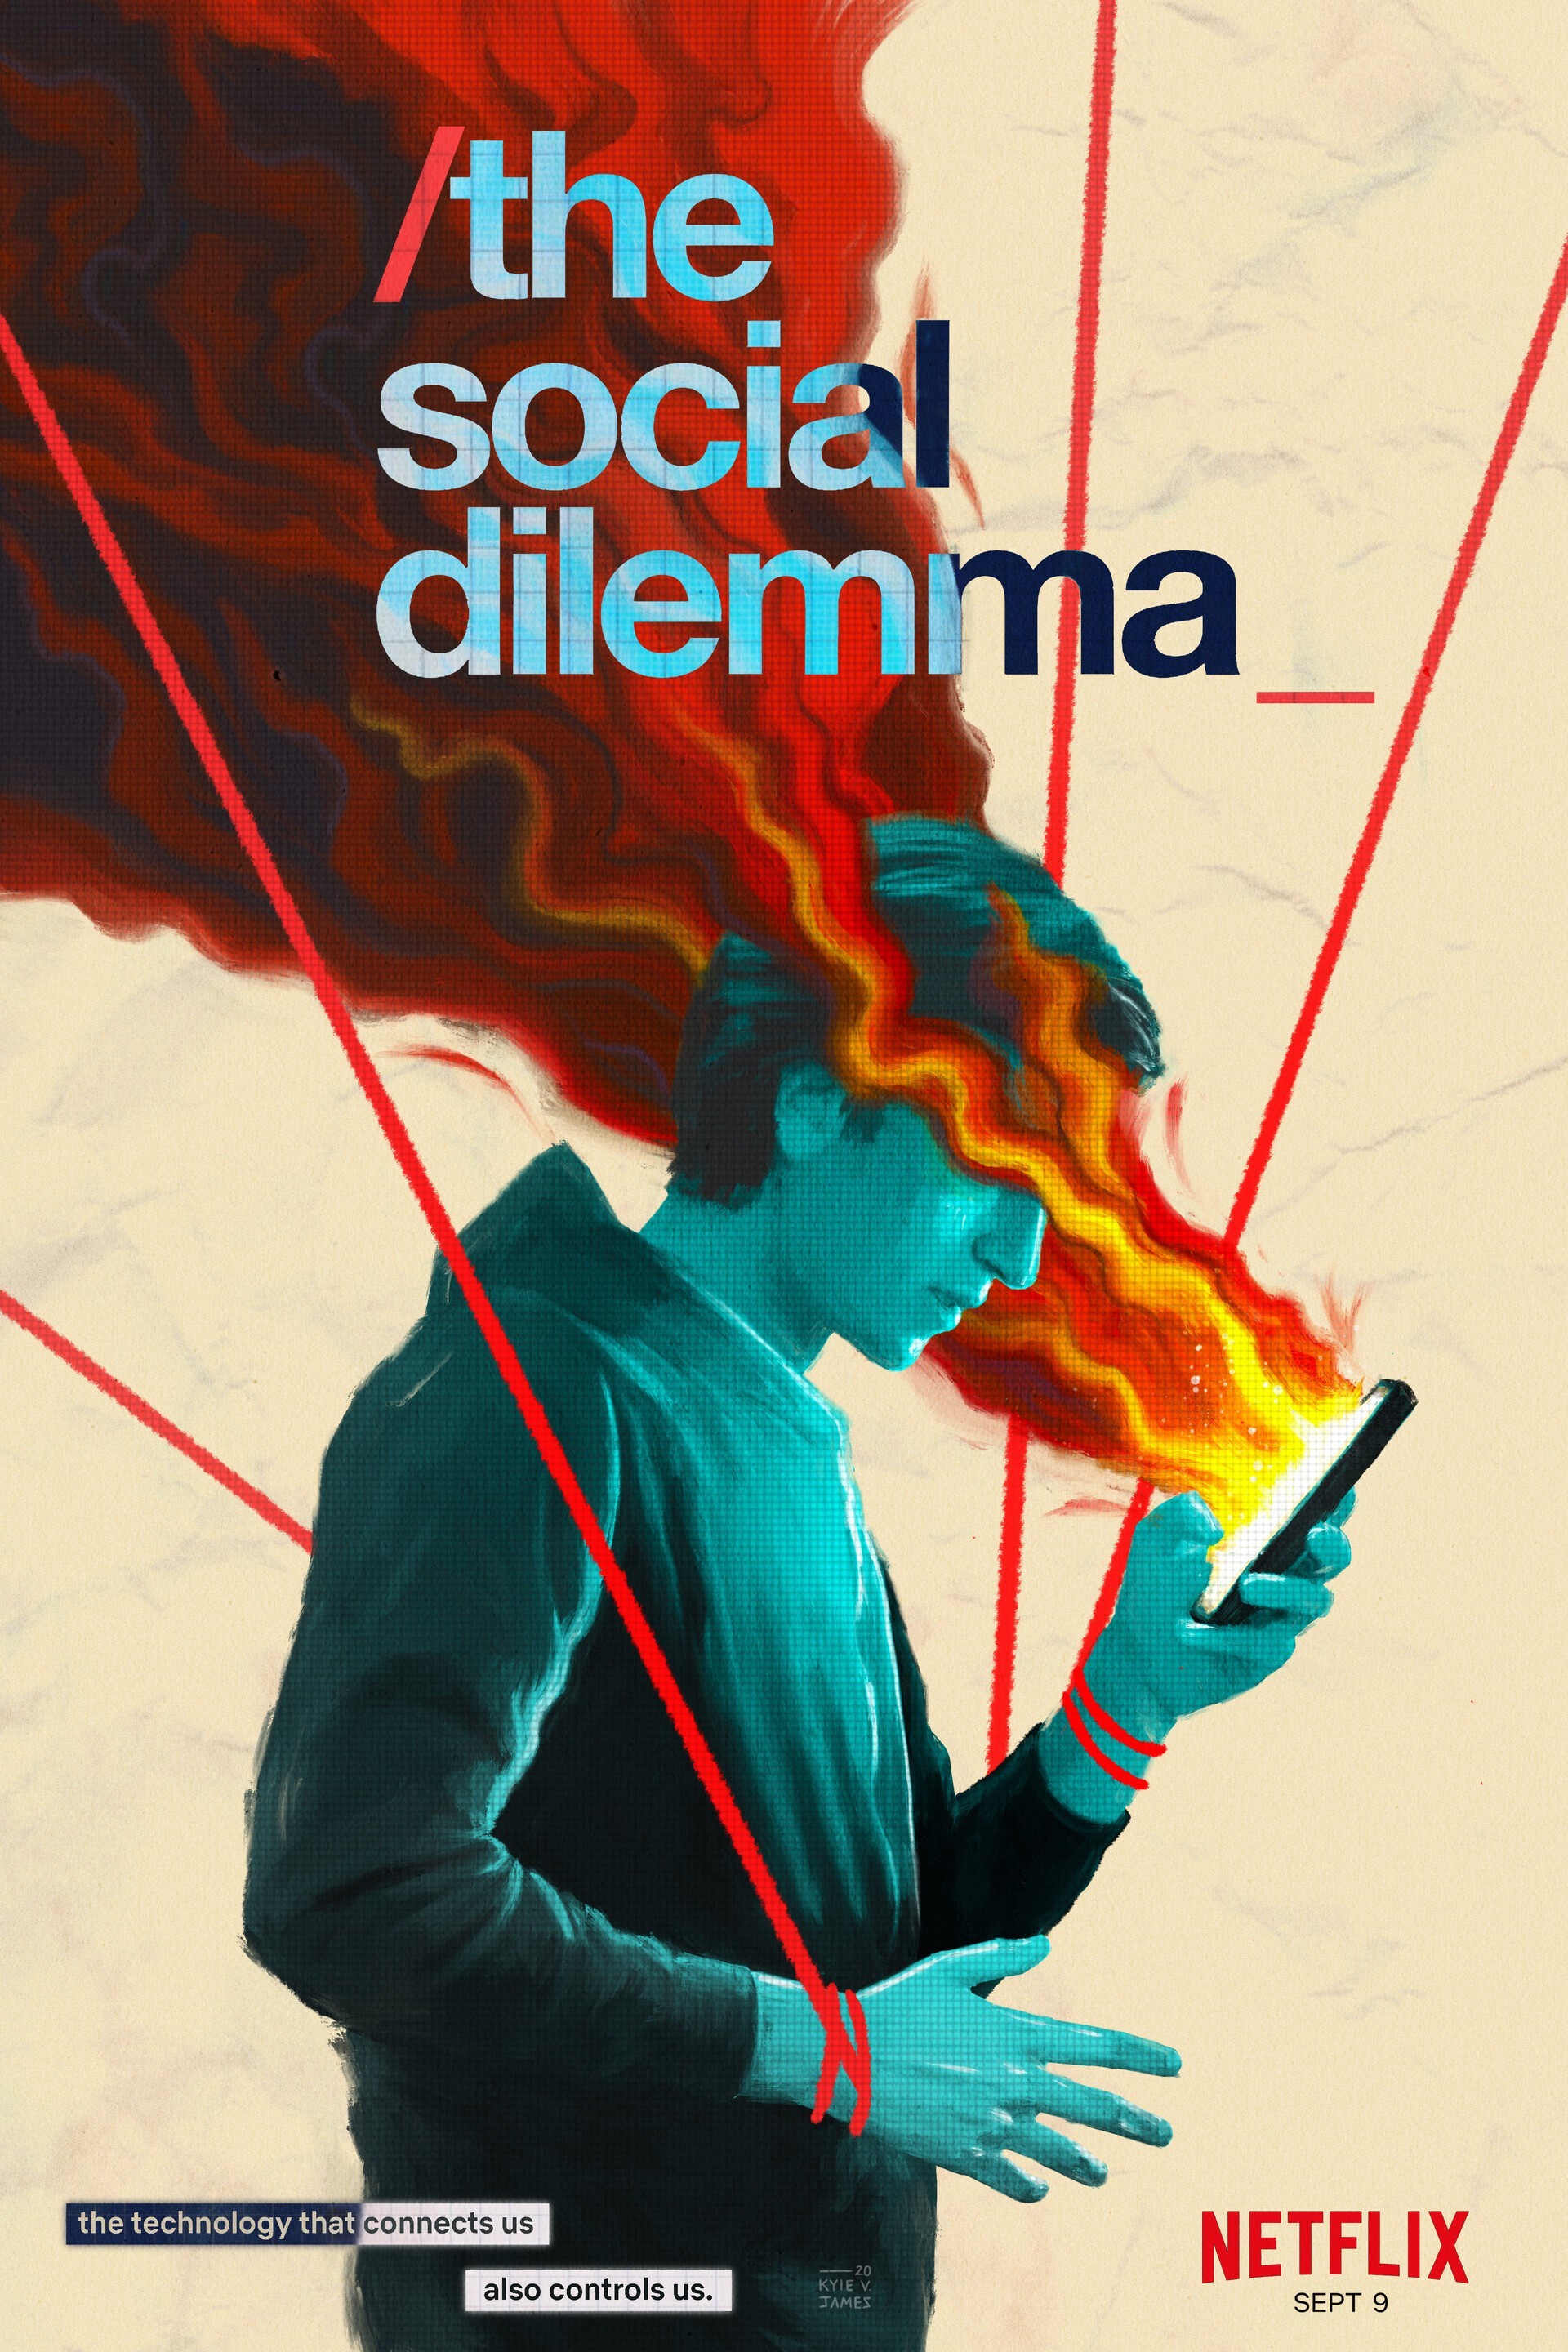 Uno de los posters de "The Social Dilemma", con el eslogan: "La tecnología que nos une es también la que nos controla".